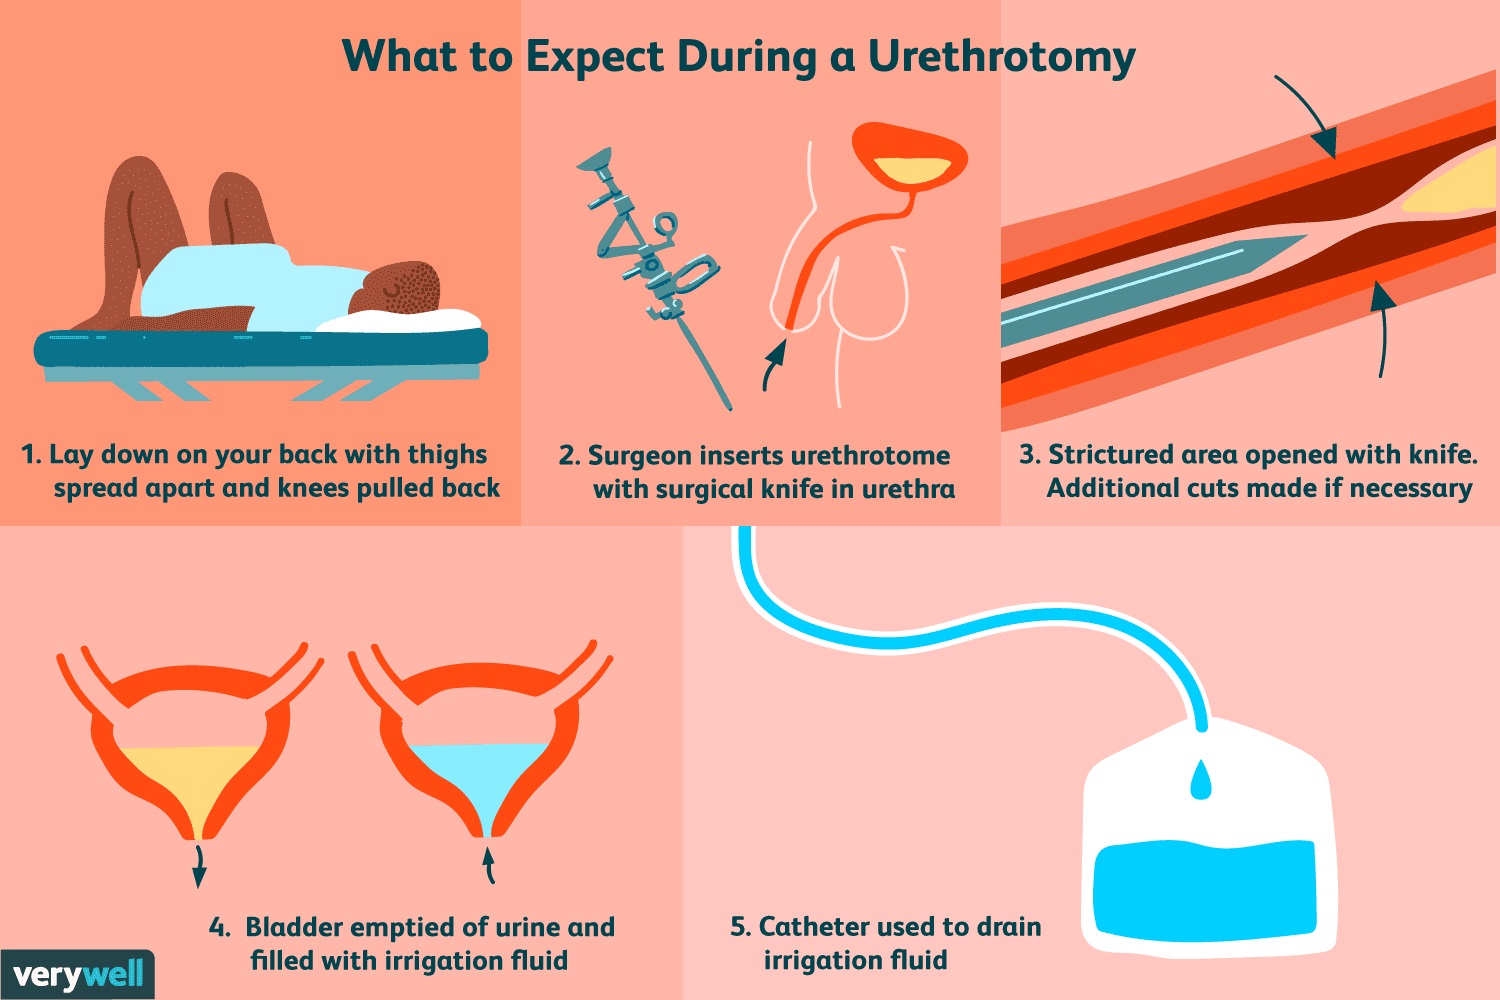 OIU-Optical Internal Urethrotomy in Iran 